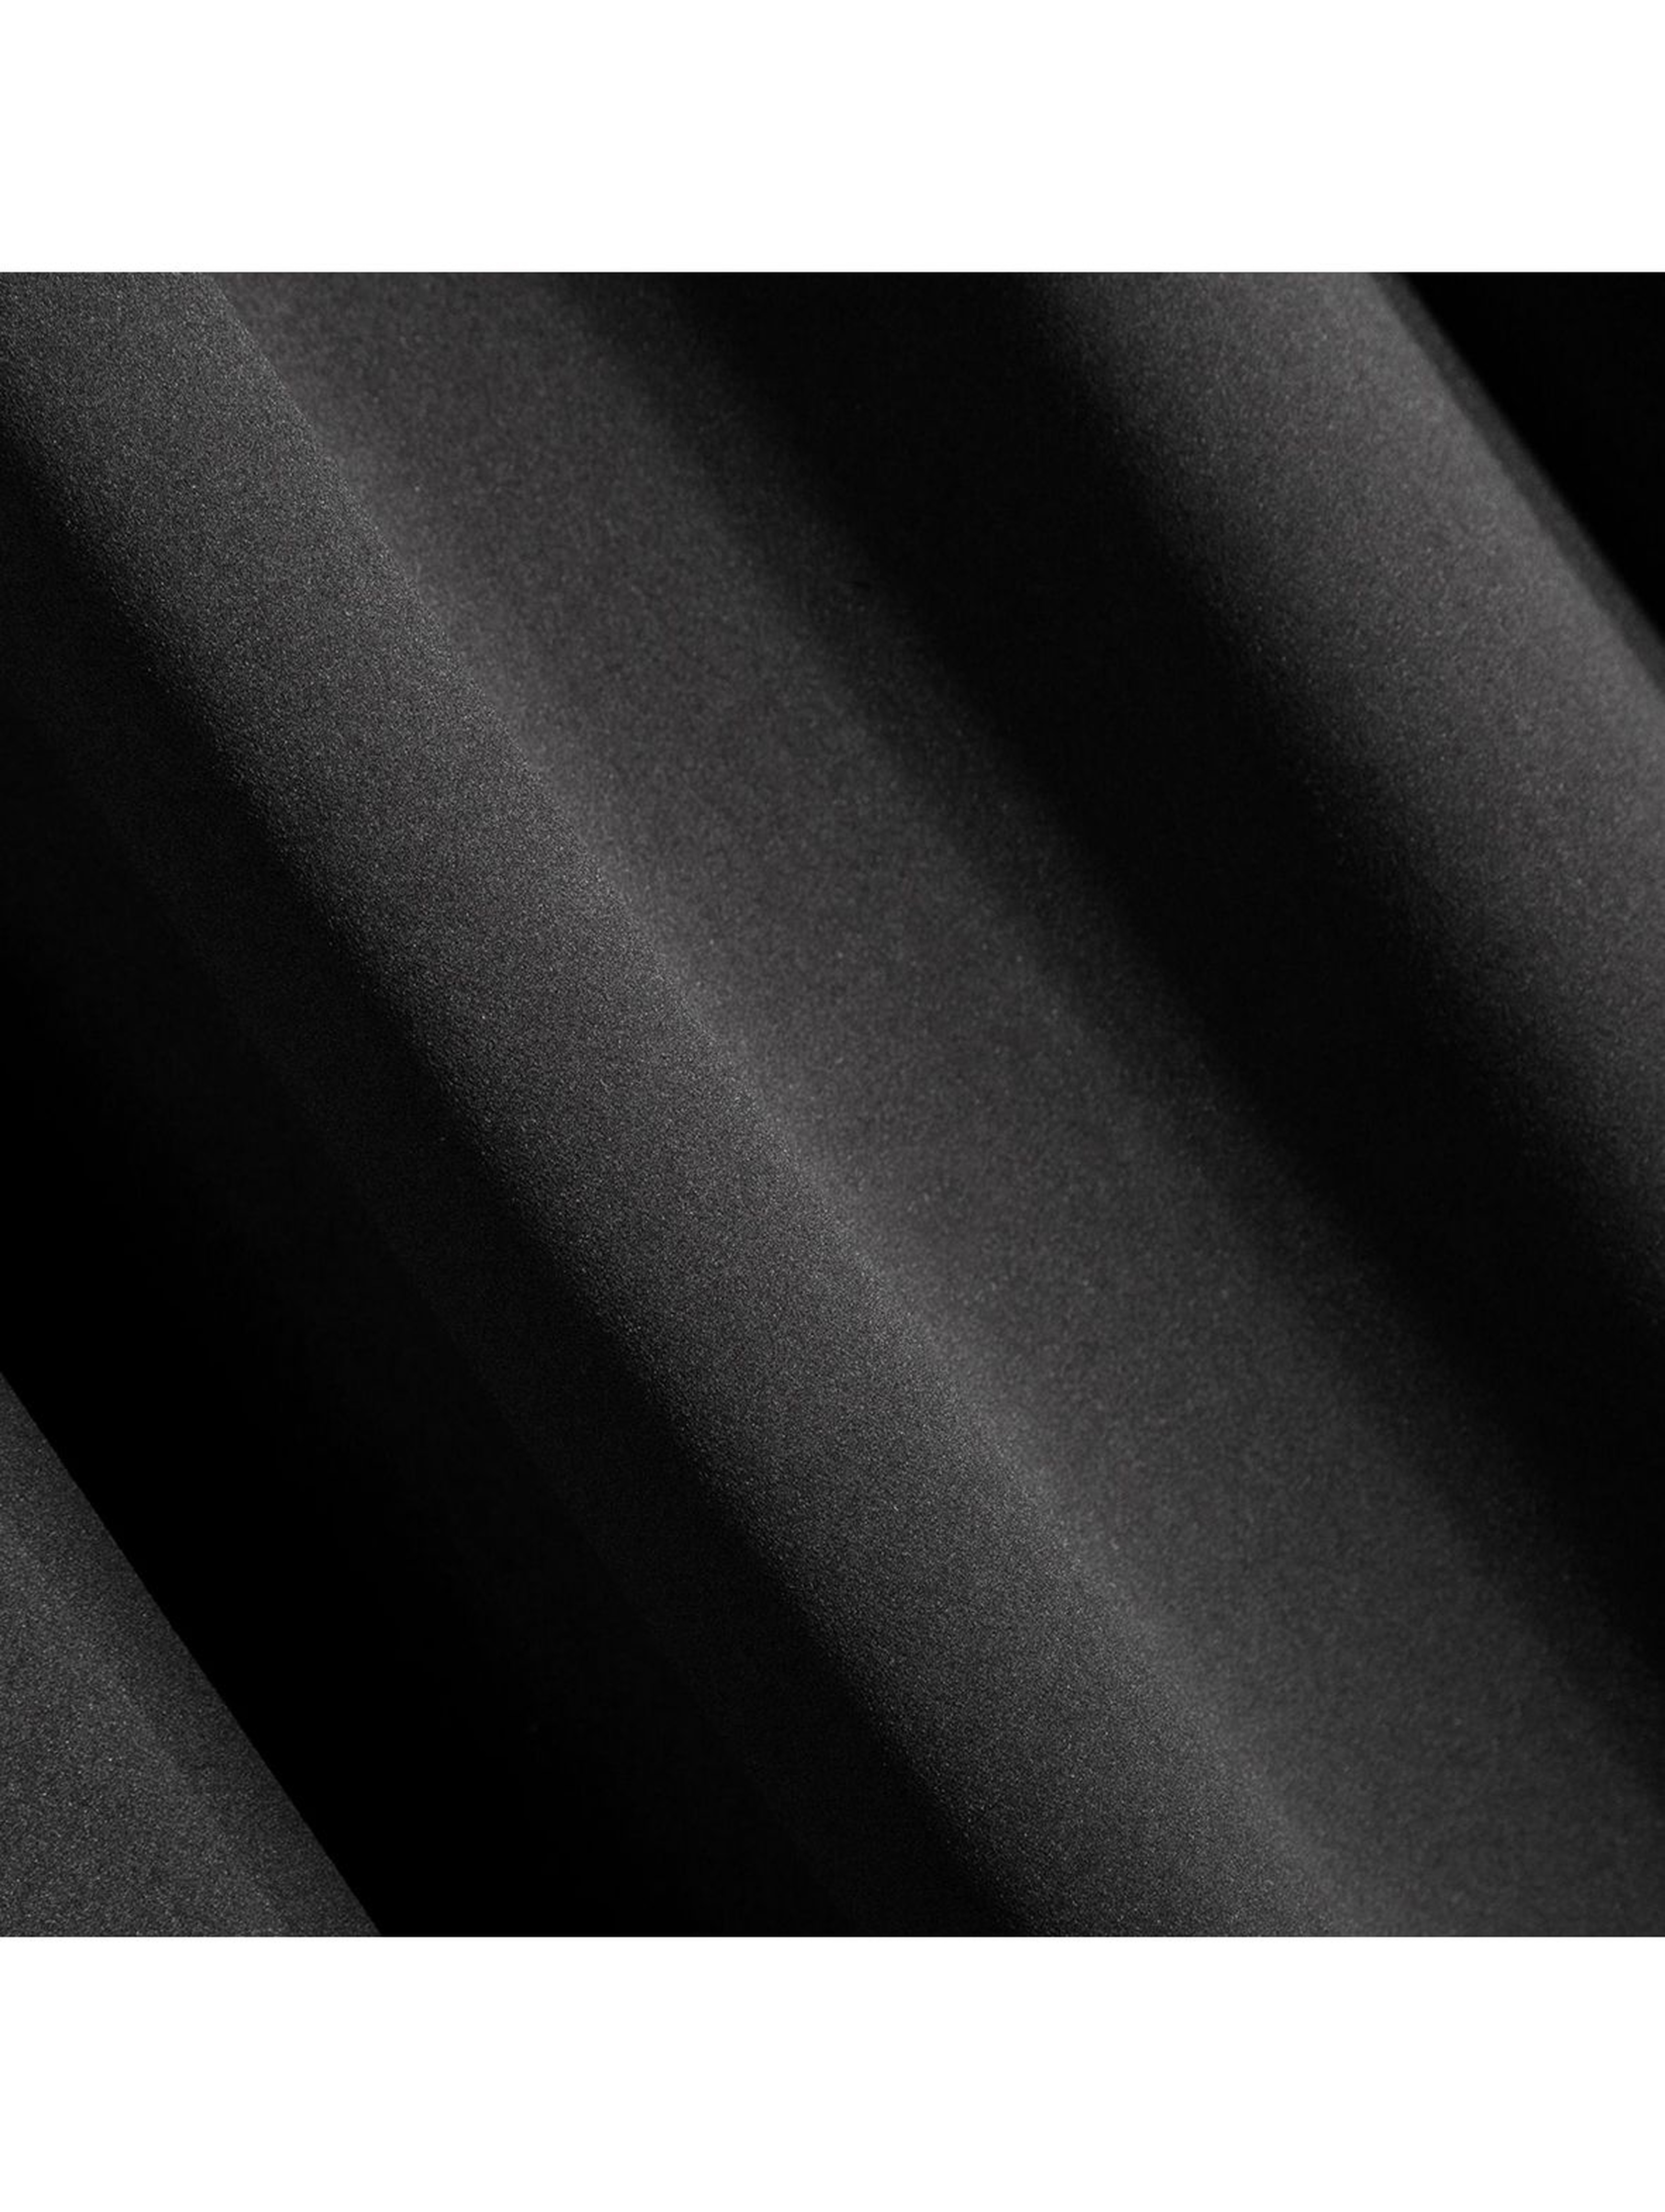 Zasłona jednokolorowa zaciemniająca -czarna - 135x270cm